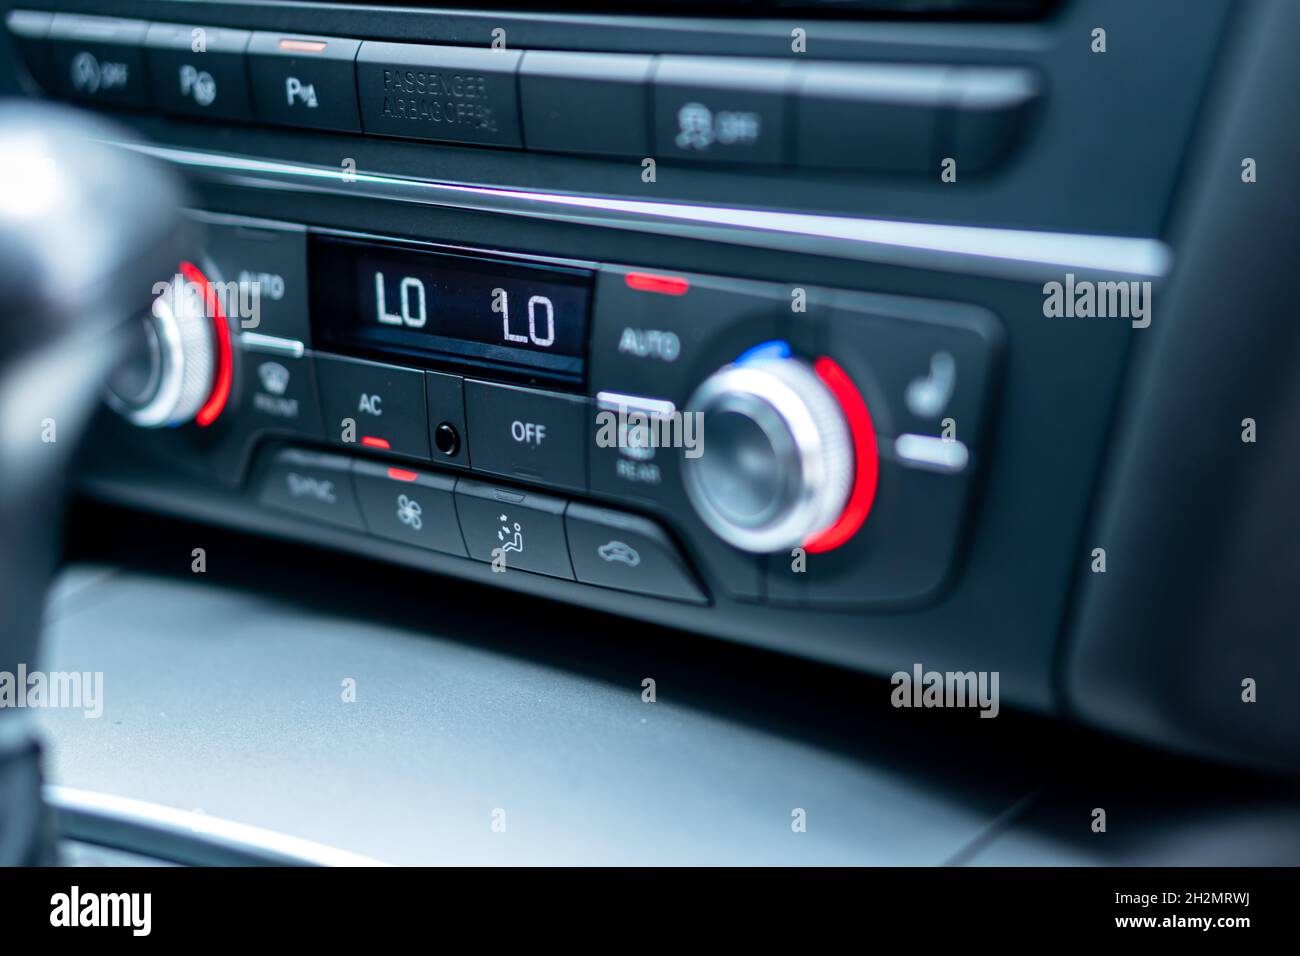 CLUJ, ROUMANIE - 15 mai 2021 : un gros plan du pannel de climatisation avec sièges chauffants sur le tableau de bord Audi A6 Banque D'Images